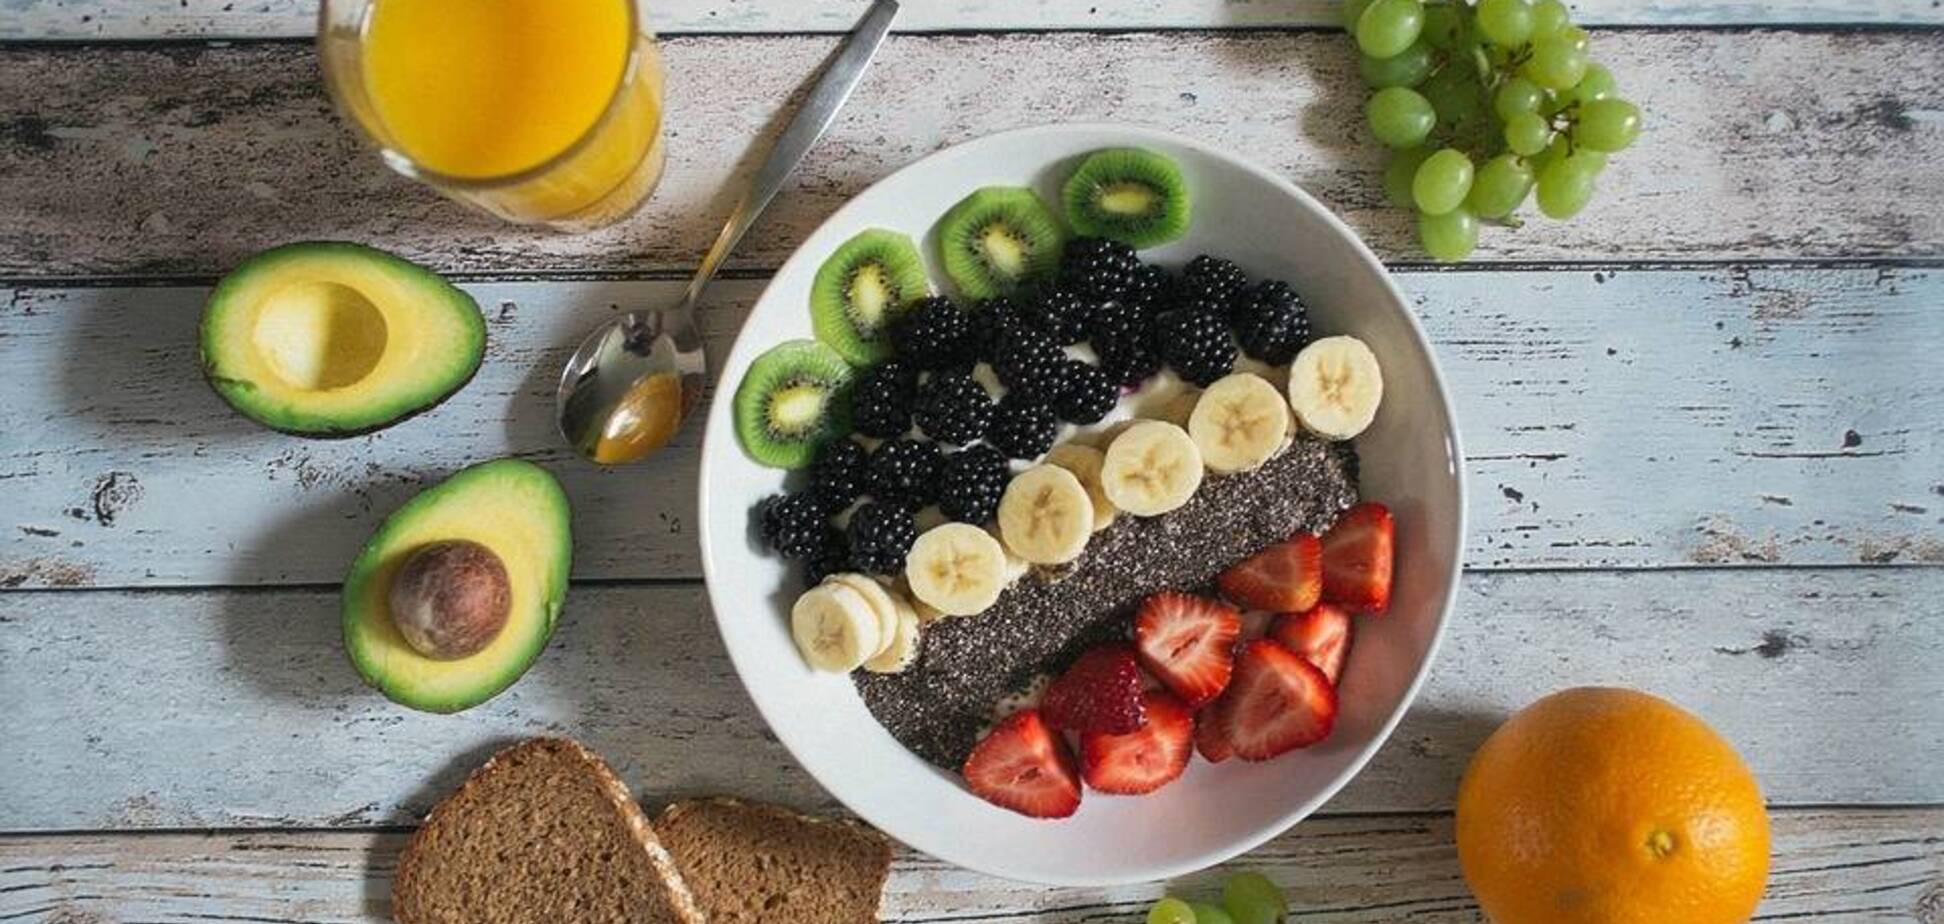 Дополнительная порция фруктов или овощей в день может снизить риск развития диабета